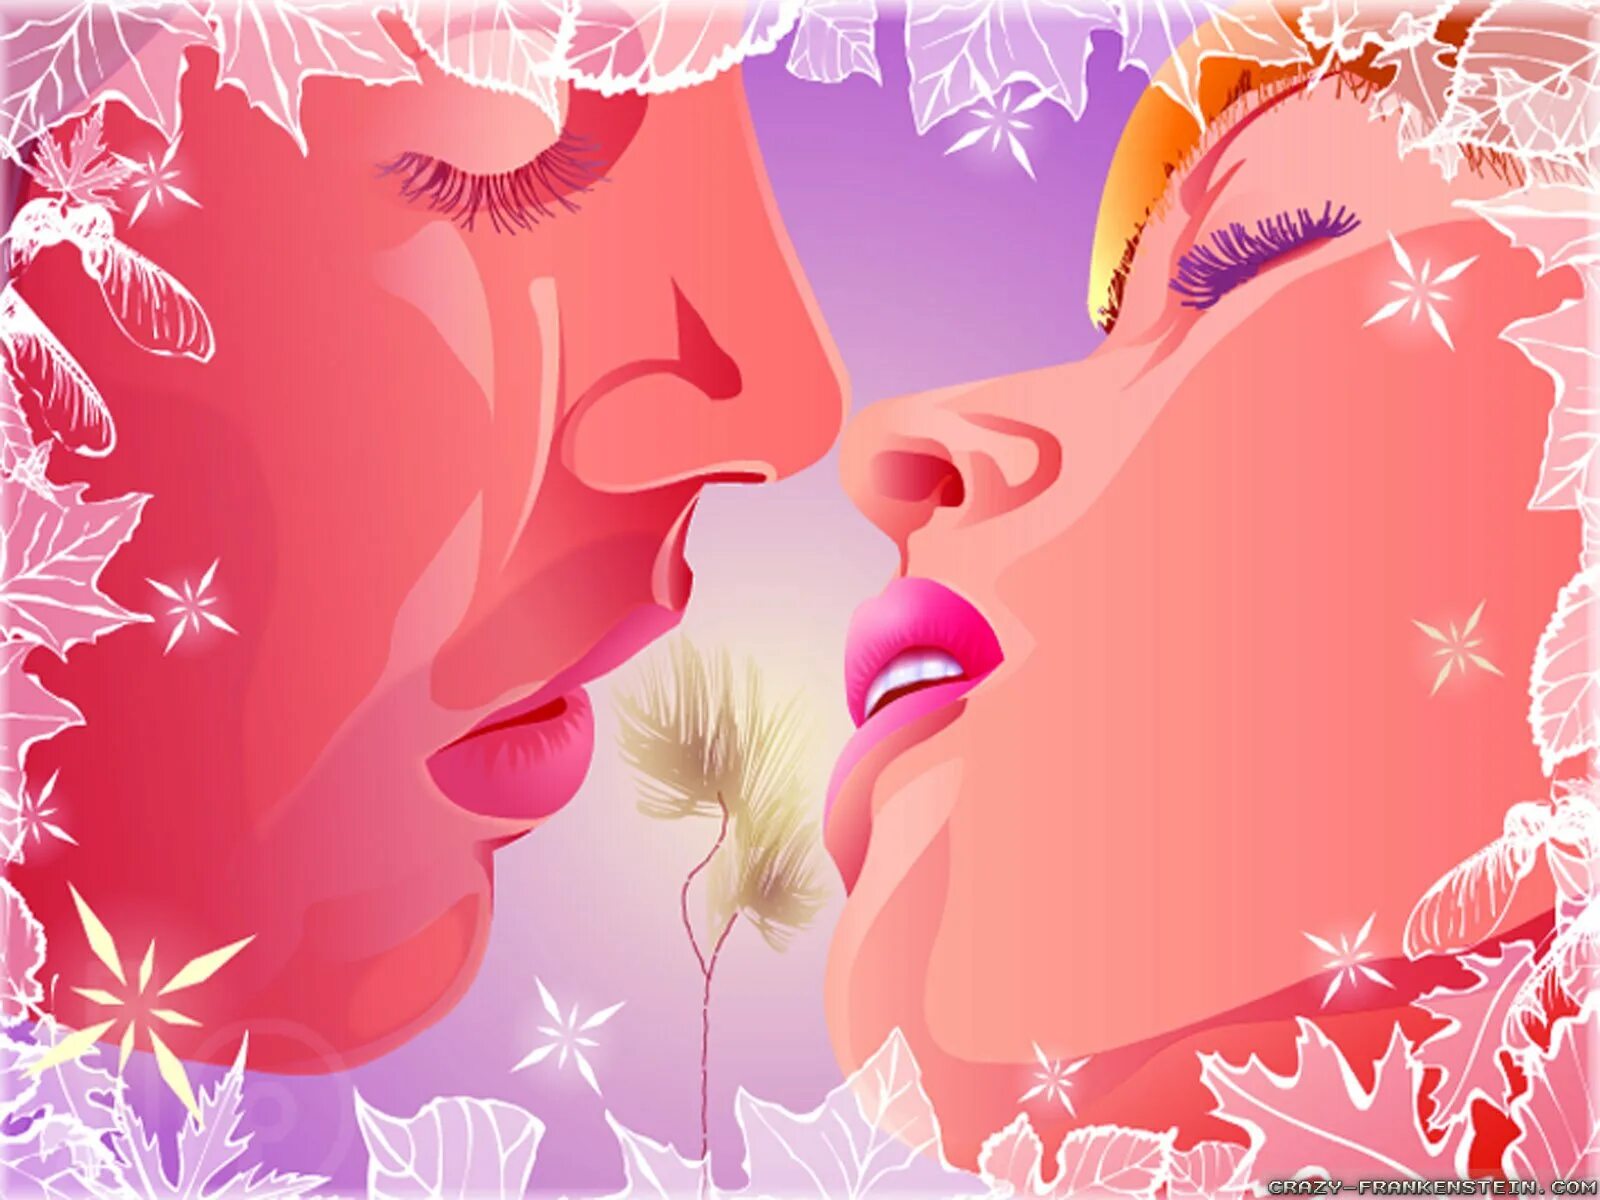 Поцелуй. Открытка с поцелуями. Открытки с поцелуйчиками для мужчины. Открытки с поцелуями женщине. Открытки любимой поцелуем